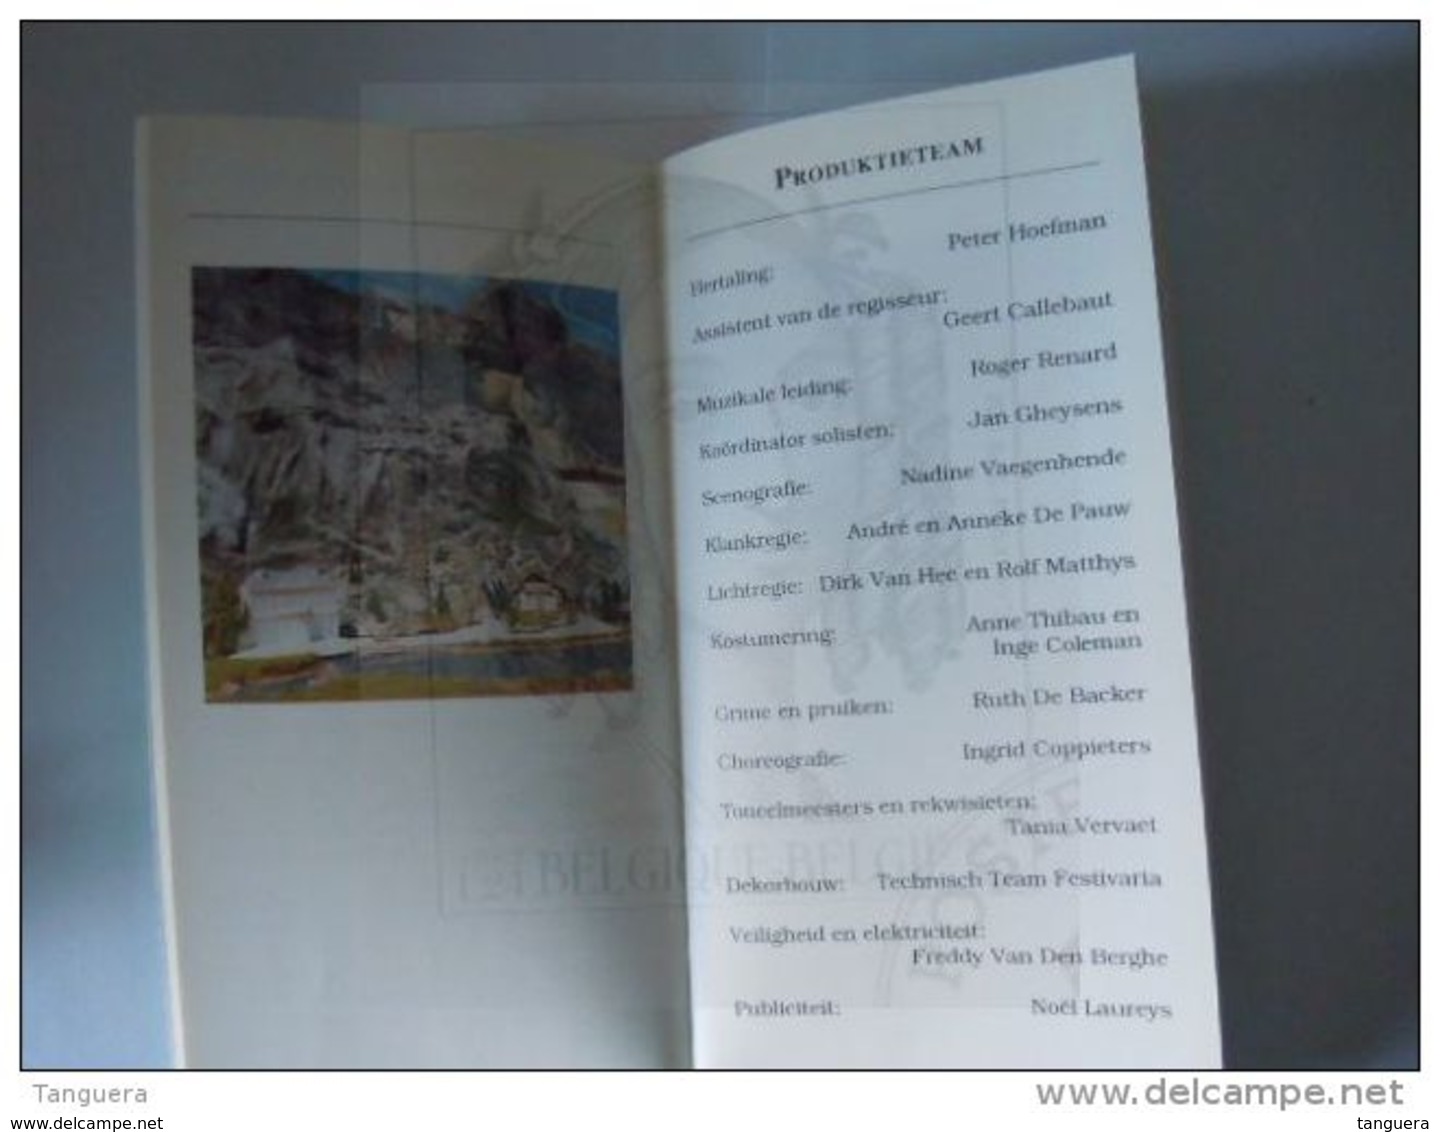 Donkmeer Festivaria 1993 Operette "De vogelhandelaar" Programma boekje 72 pagina's 10 x 20 cm